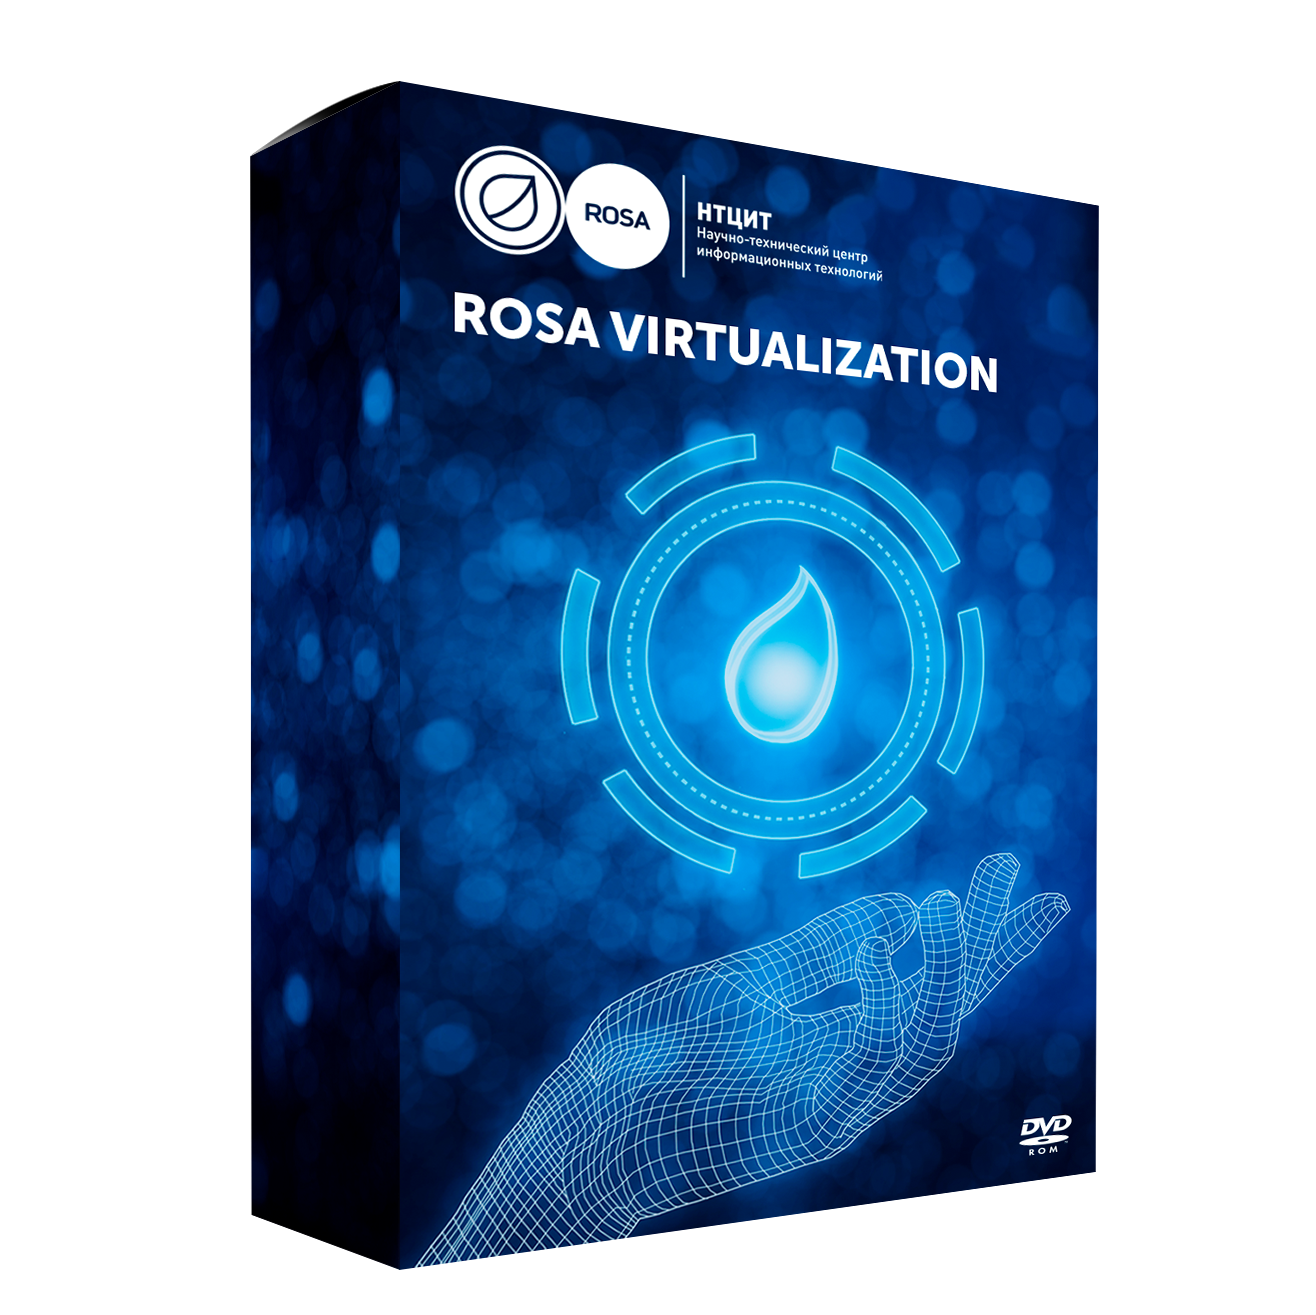 Сертификат продления стандартной технической поддержки для системы виртуализации ROSA Virtualization (100VM), сроком 1 год